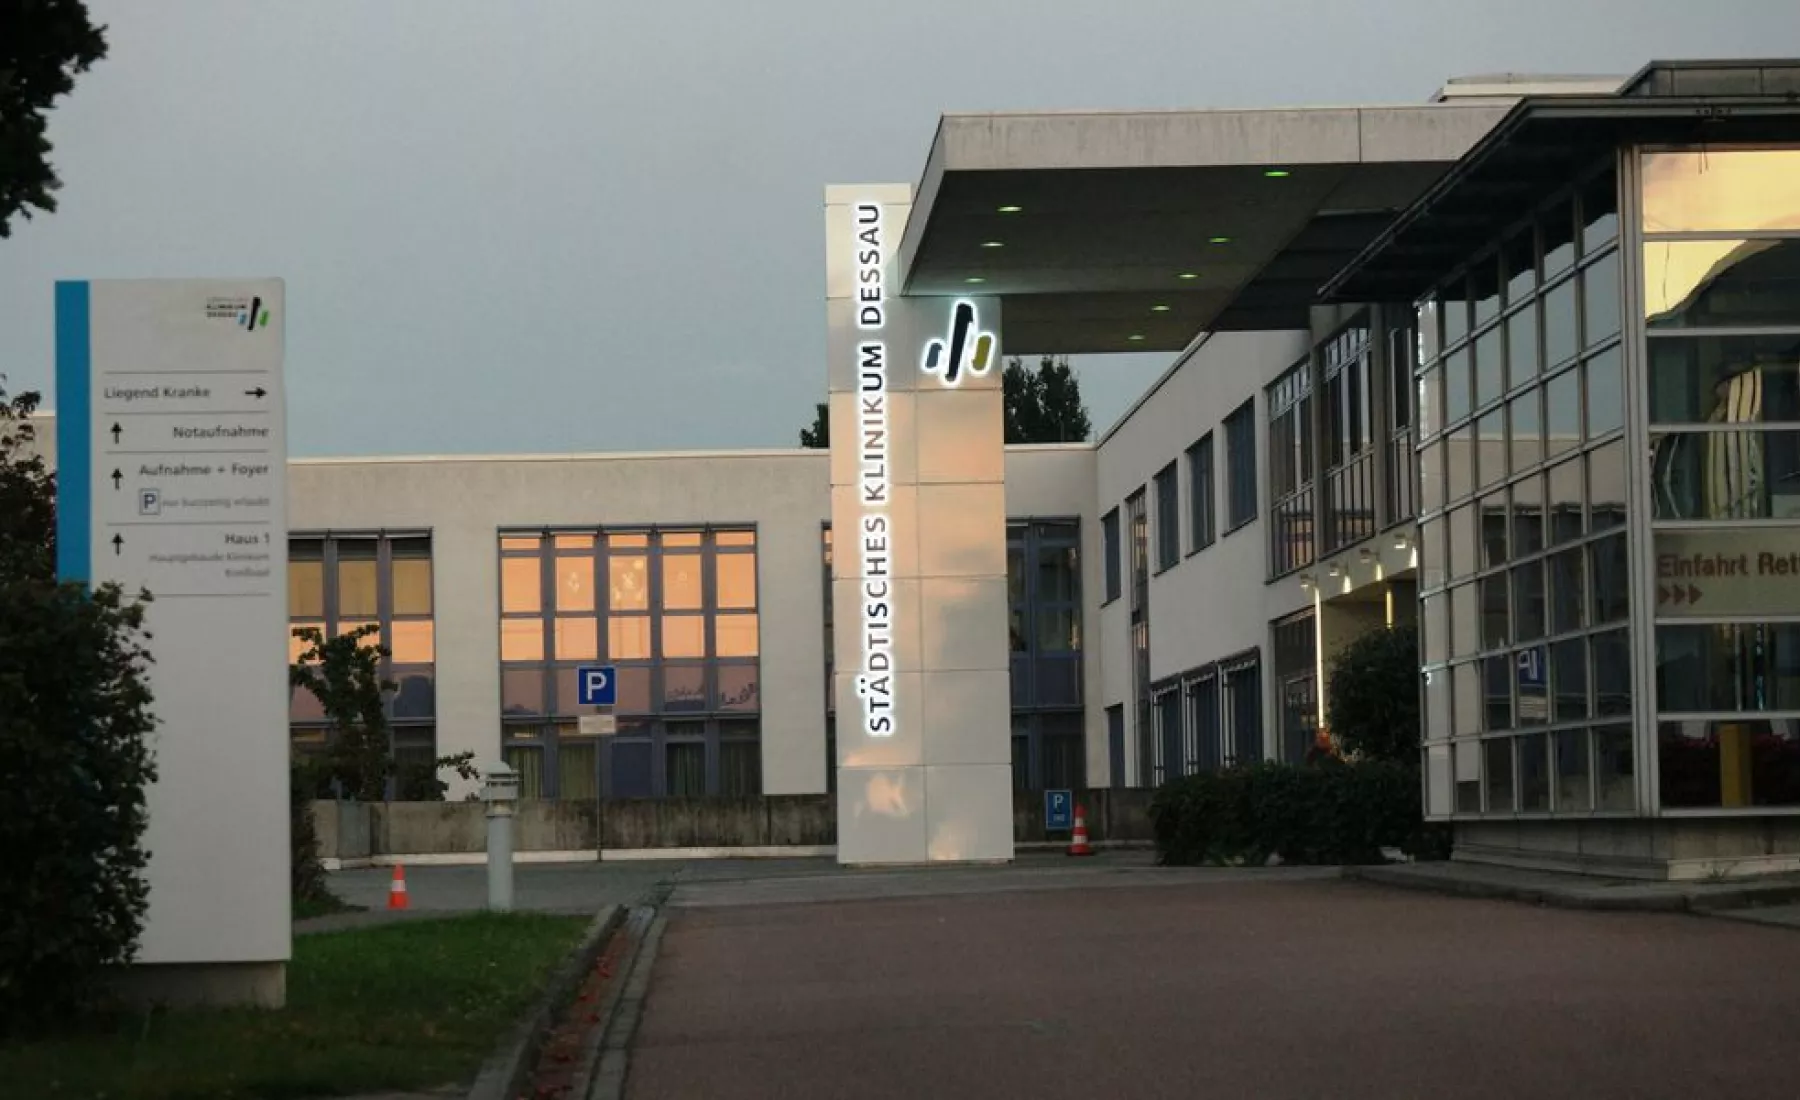 Städtisches Klinikum Dessau